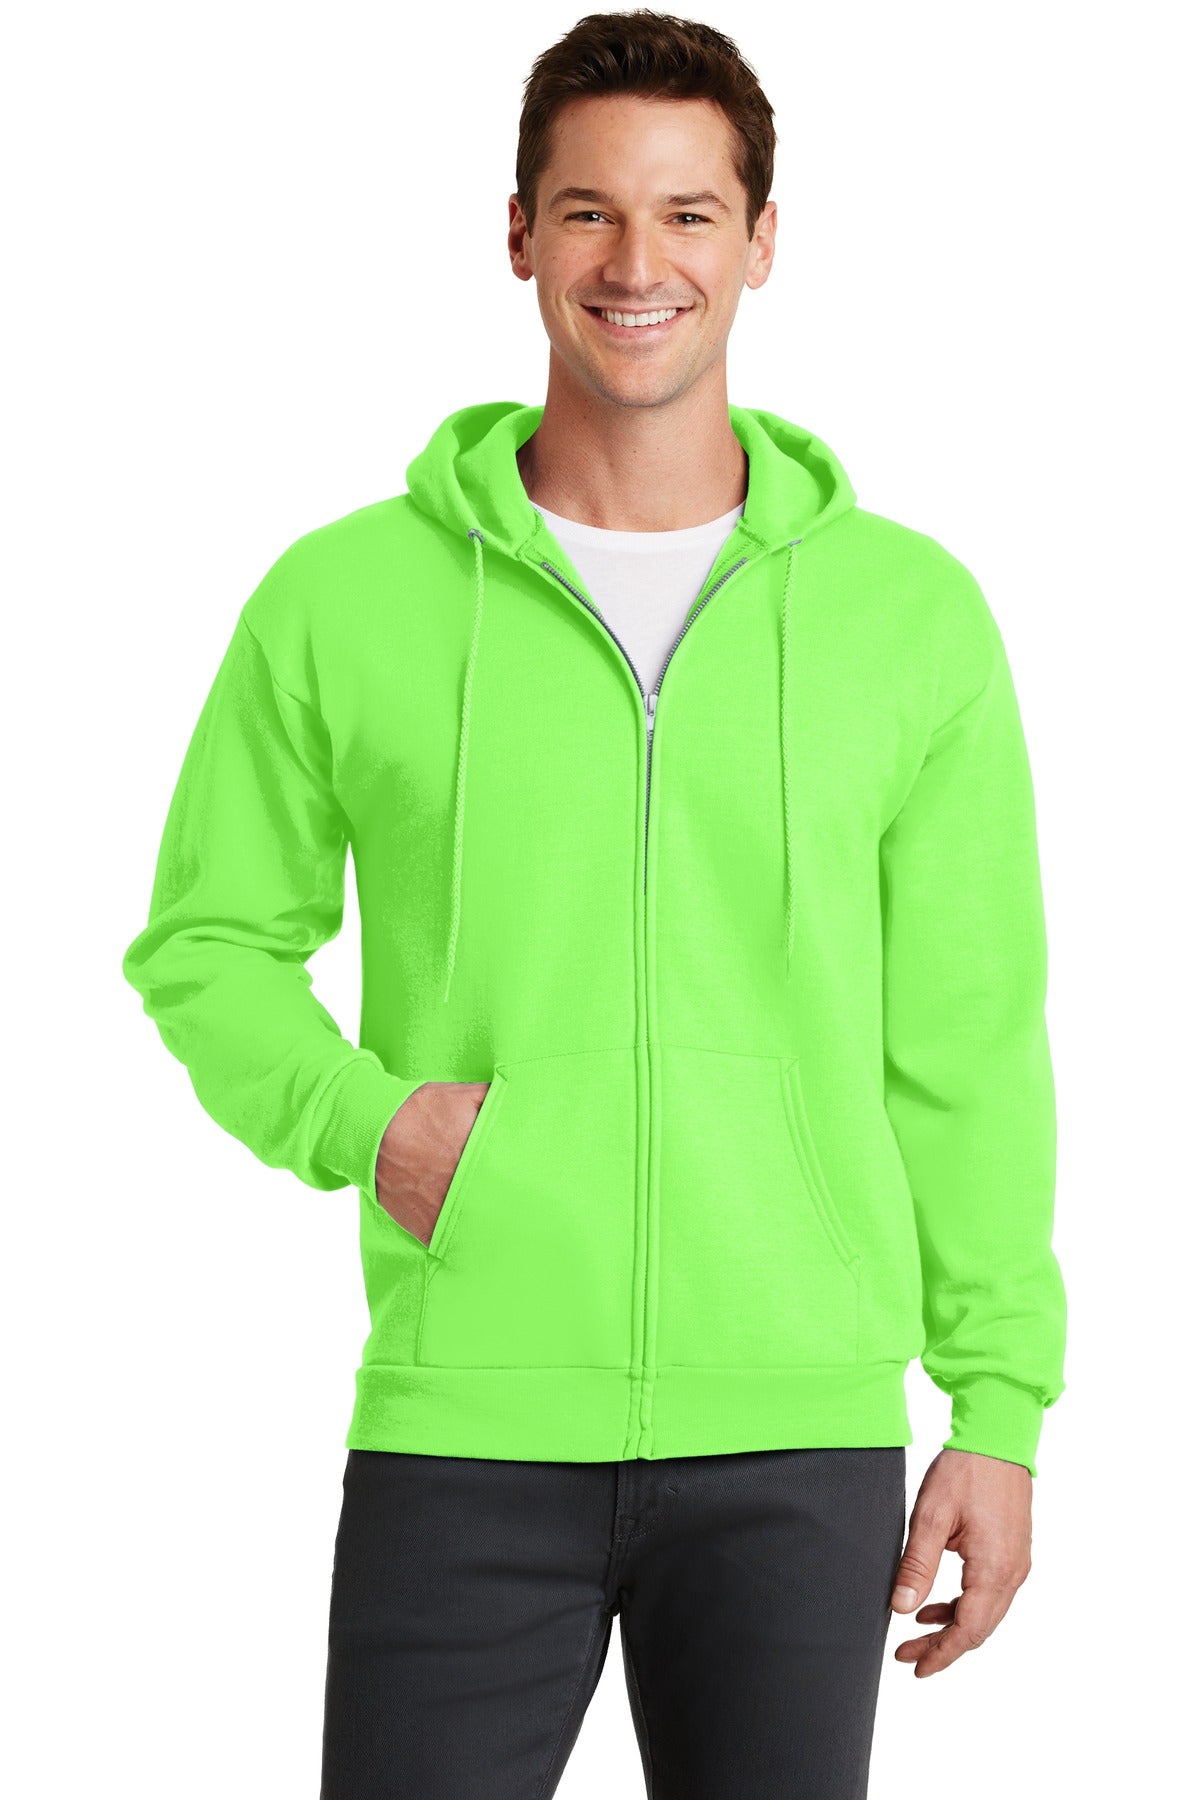 Sweatshirts/Fleece Neon Green Port & Company